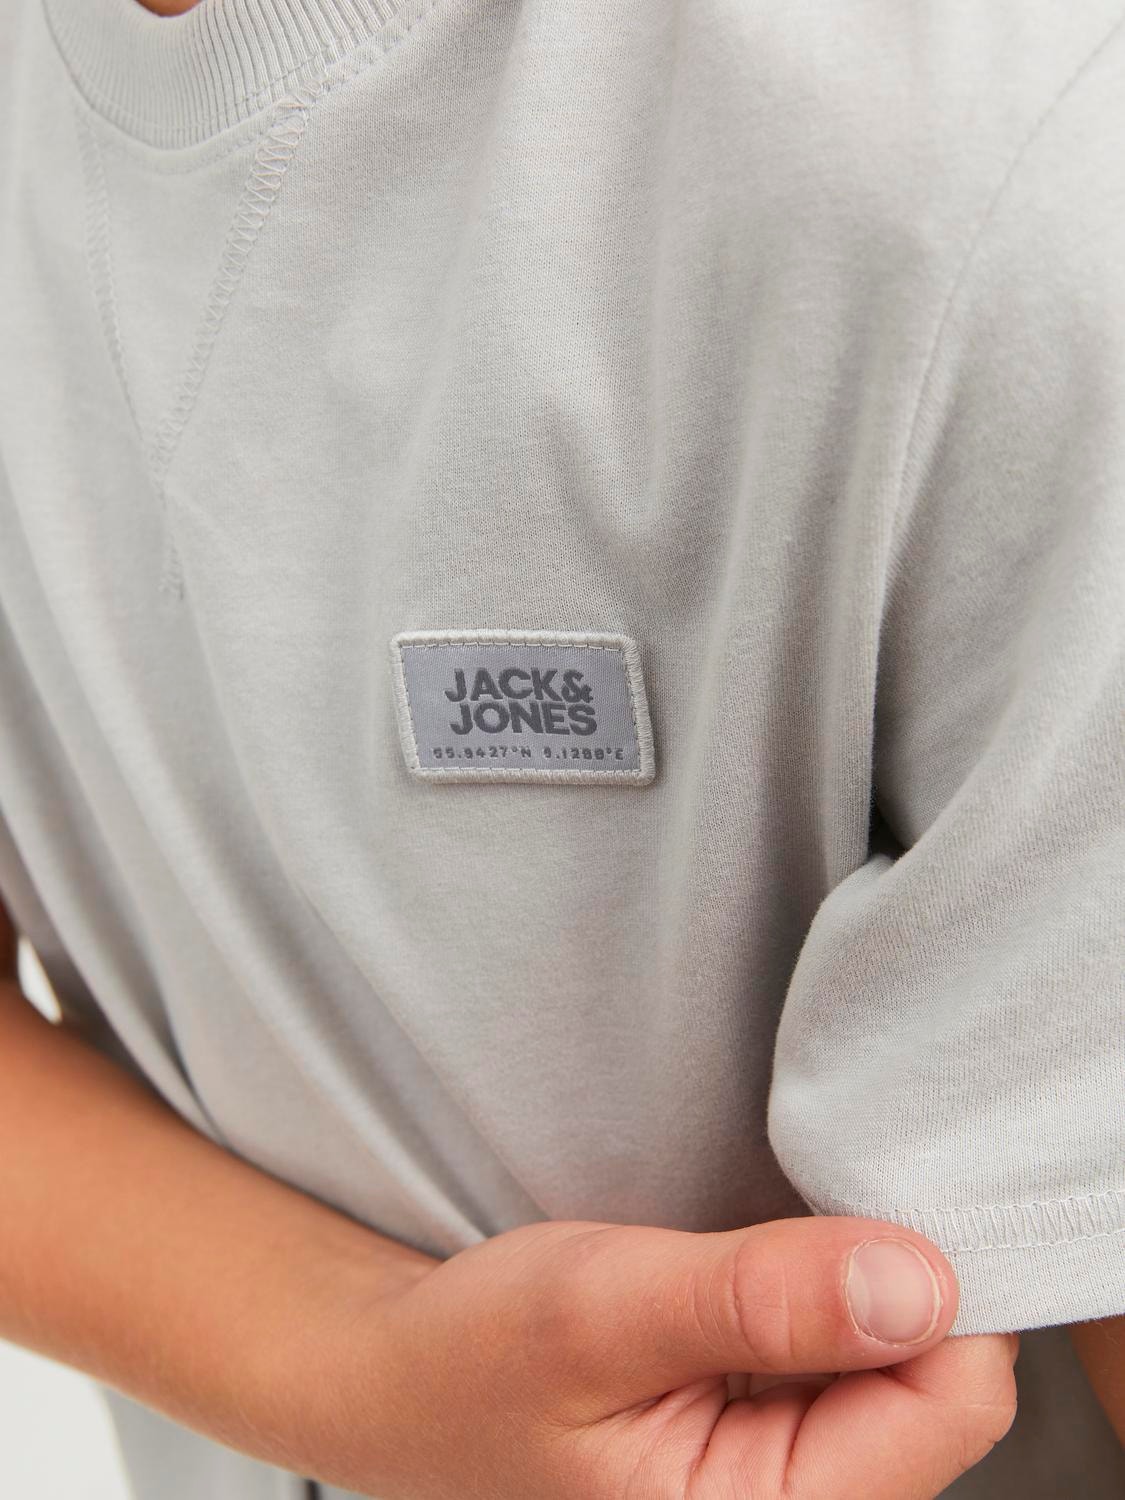 Jack & Jones Logo T-shirt Für jungs -High-rise - 12240964